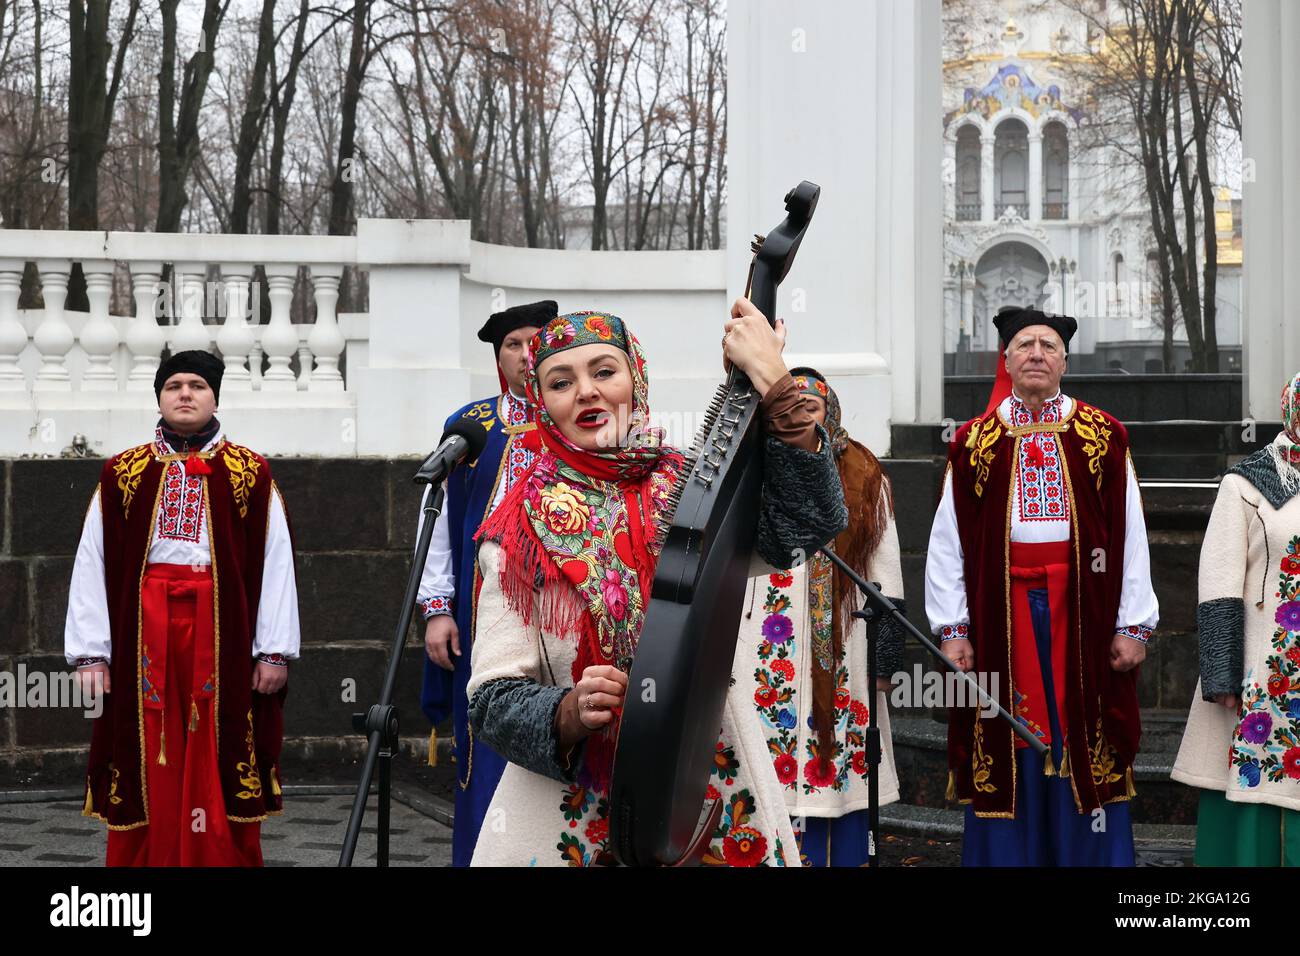 KHARKIV, UCRAINA - 21 NOVEMBRE 2022 - Un ensemble folk si esibisce durante la presentazione della medaglia commemorativa 'Kharkiv - Città degli Eroi' nel giorno della dignità e della libertà, Kharkiv, nel nord-est dell'Ucraina. Foto Stock